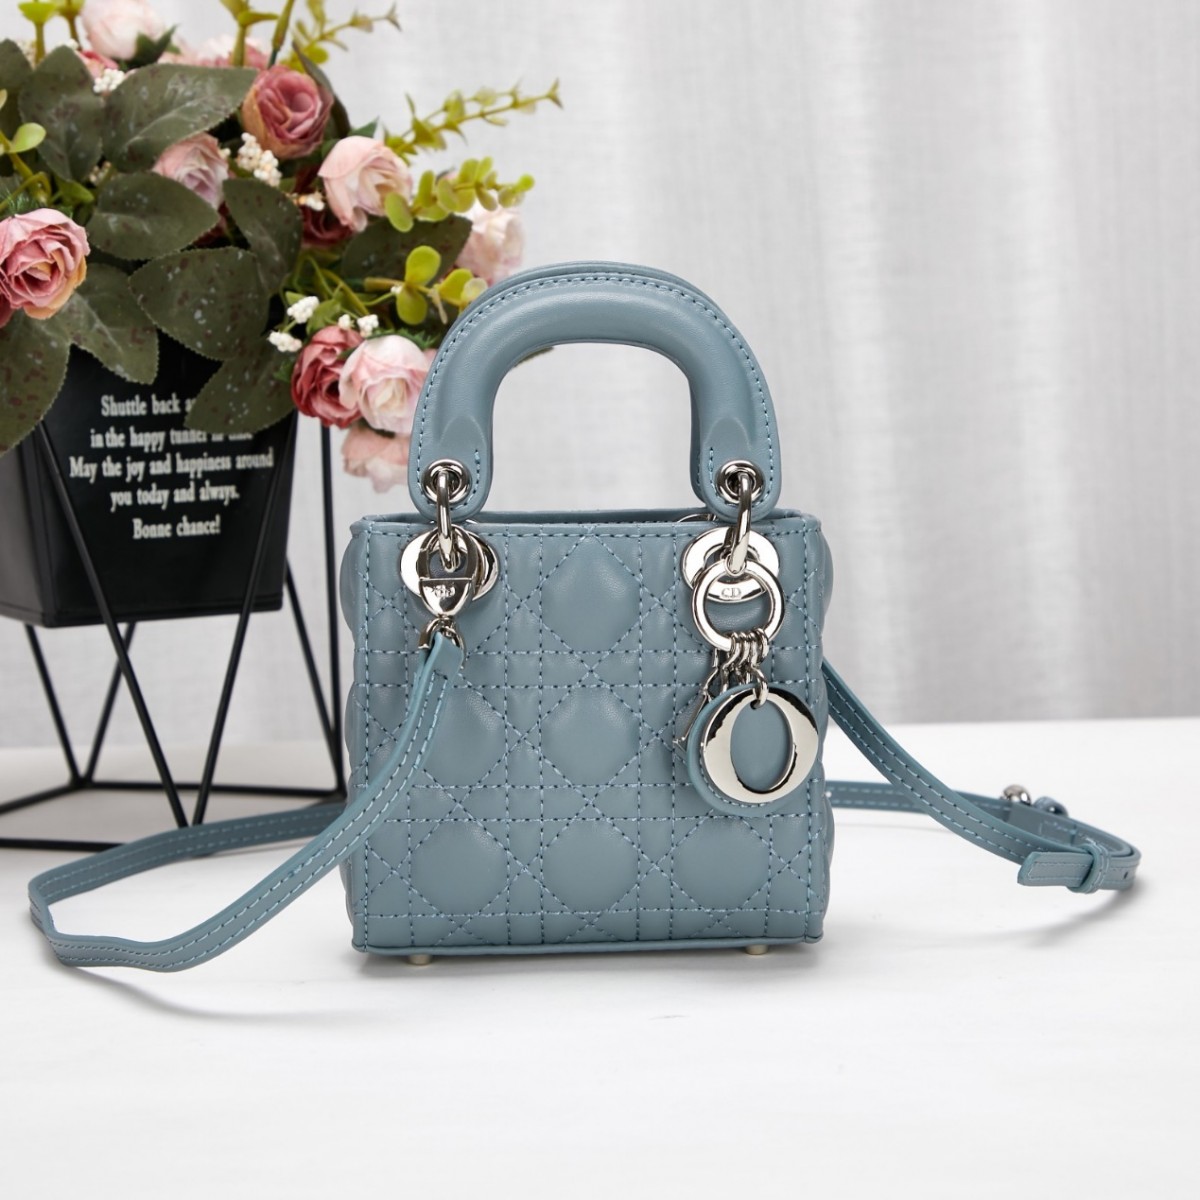 Kāpēc elegantās Lady Dior reprodukcijas somas ir tik klasiskas? (Atjaunināts 2022. gadā) - Labākās kvalitātes viltotās Louis Vuitton somas tiešsaistes veikals, dizaineru somas kopija ru